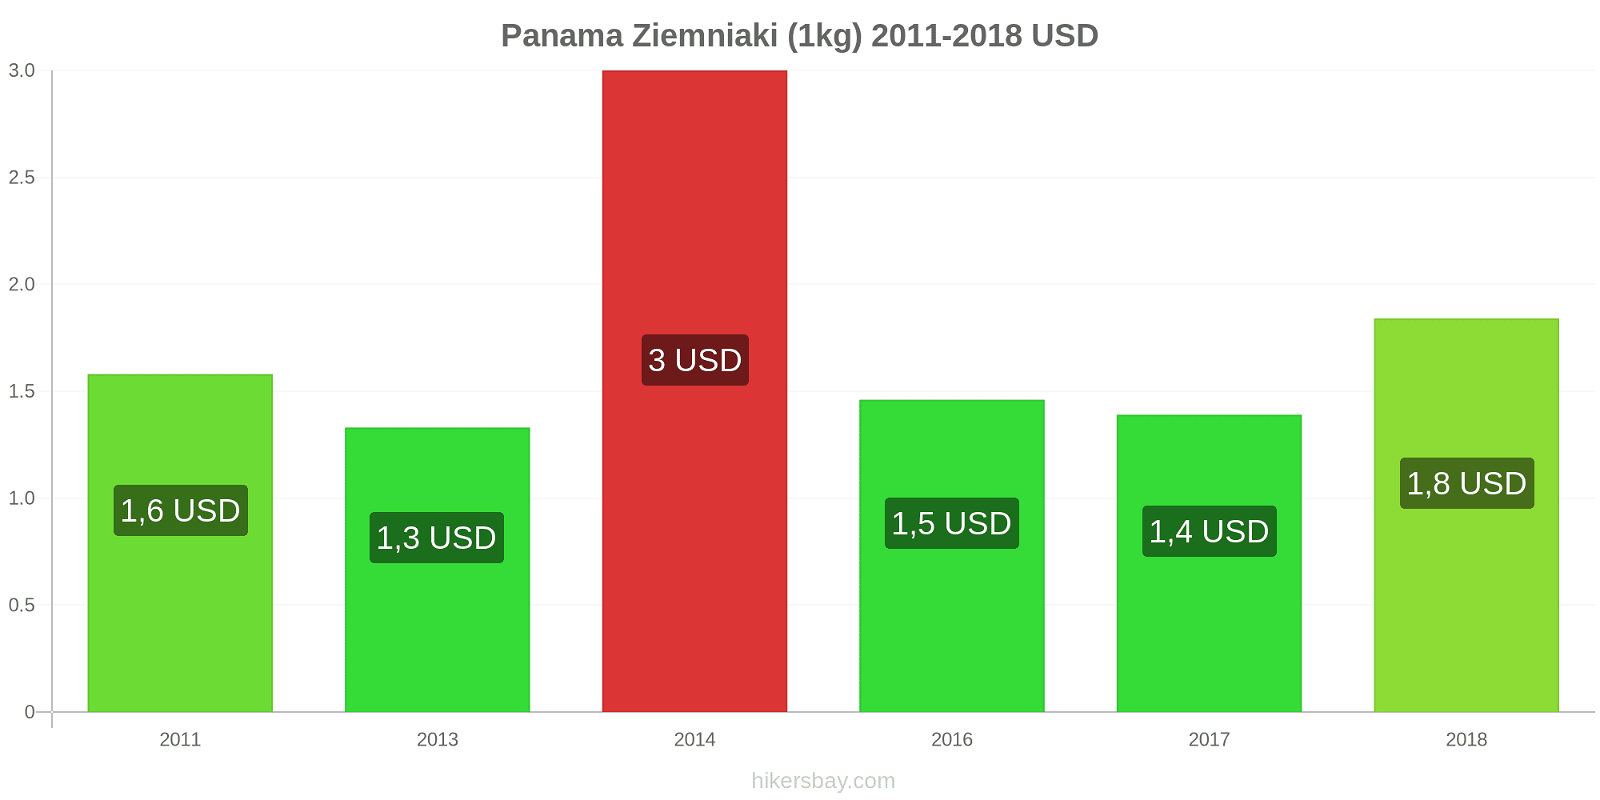 Panama zmiany cen Ziemniaki (1kg) hikersbay.com